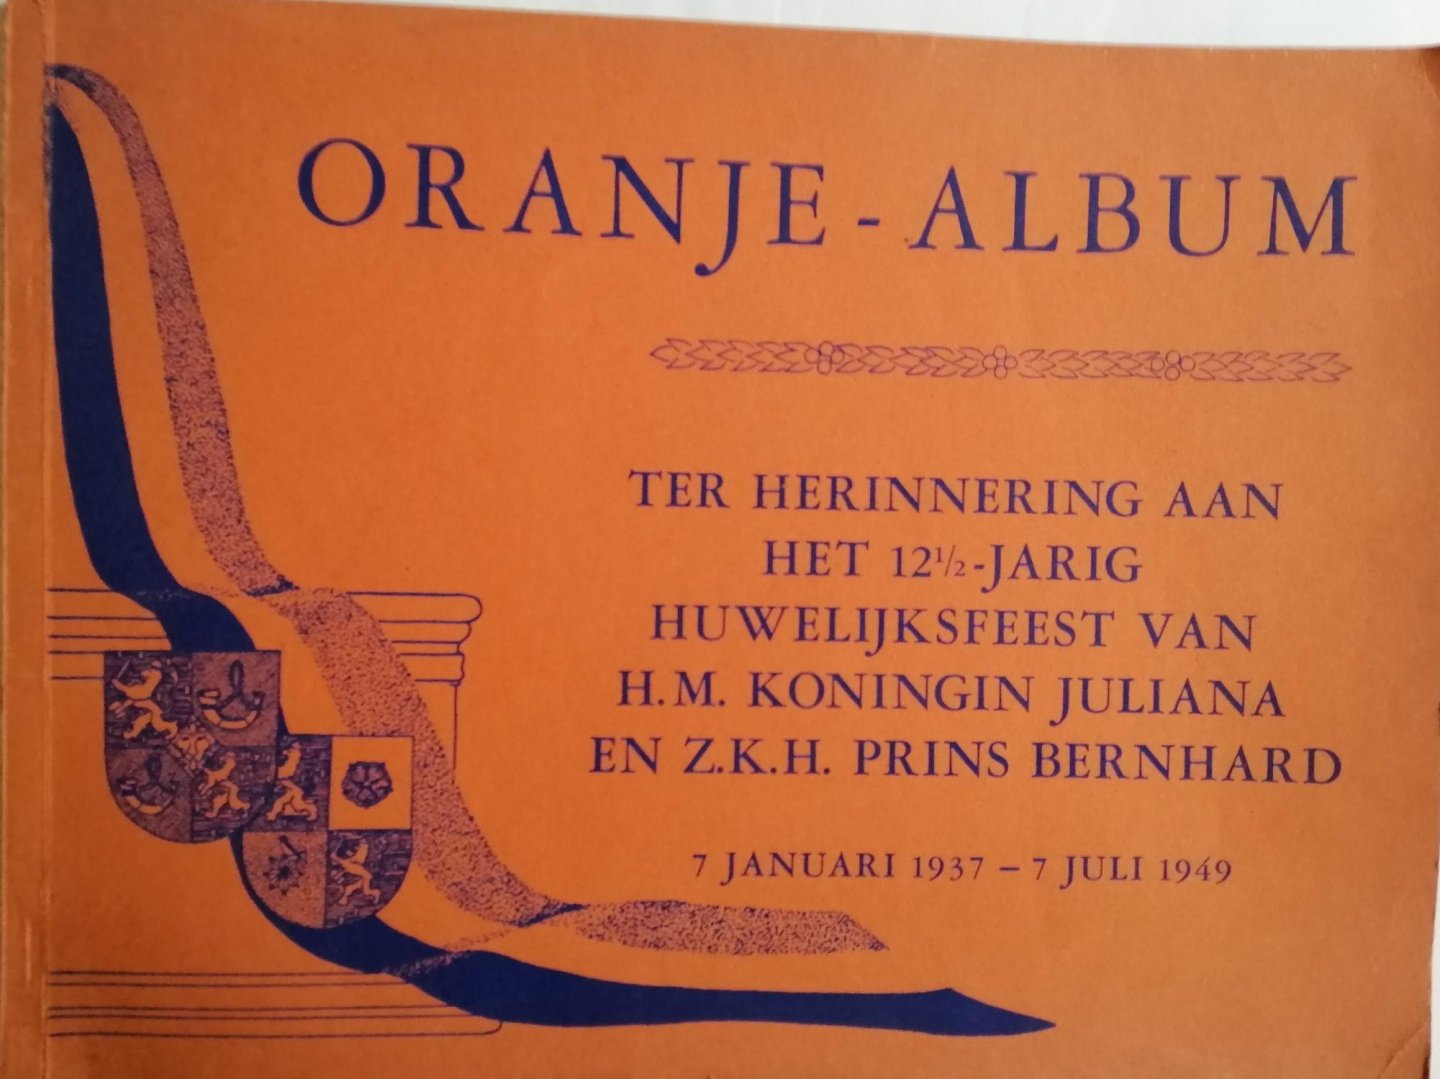  - Oranje-album Ter herinnering aan het 121/2-jarig huwelijksfeest van H.M. Koningin Juliana en Z.K.H. Prins Bernhard 7 januari 1937 - 7 juli 1949